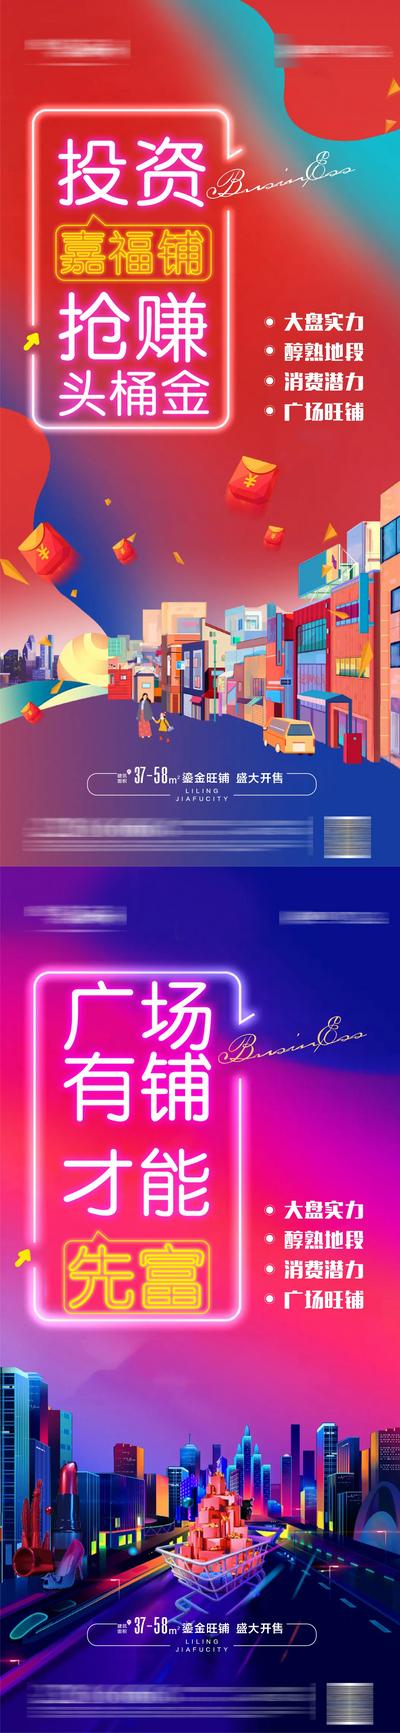 南门网 海报 地产 商铺 插画 炫彩 城市 红包 购物车